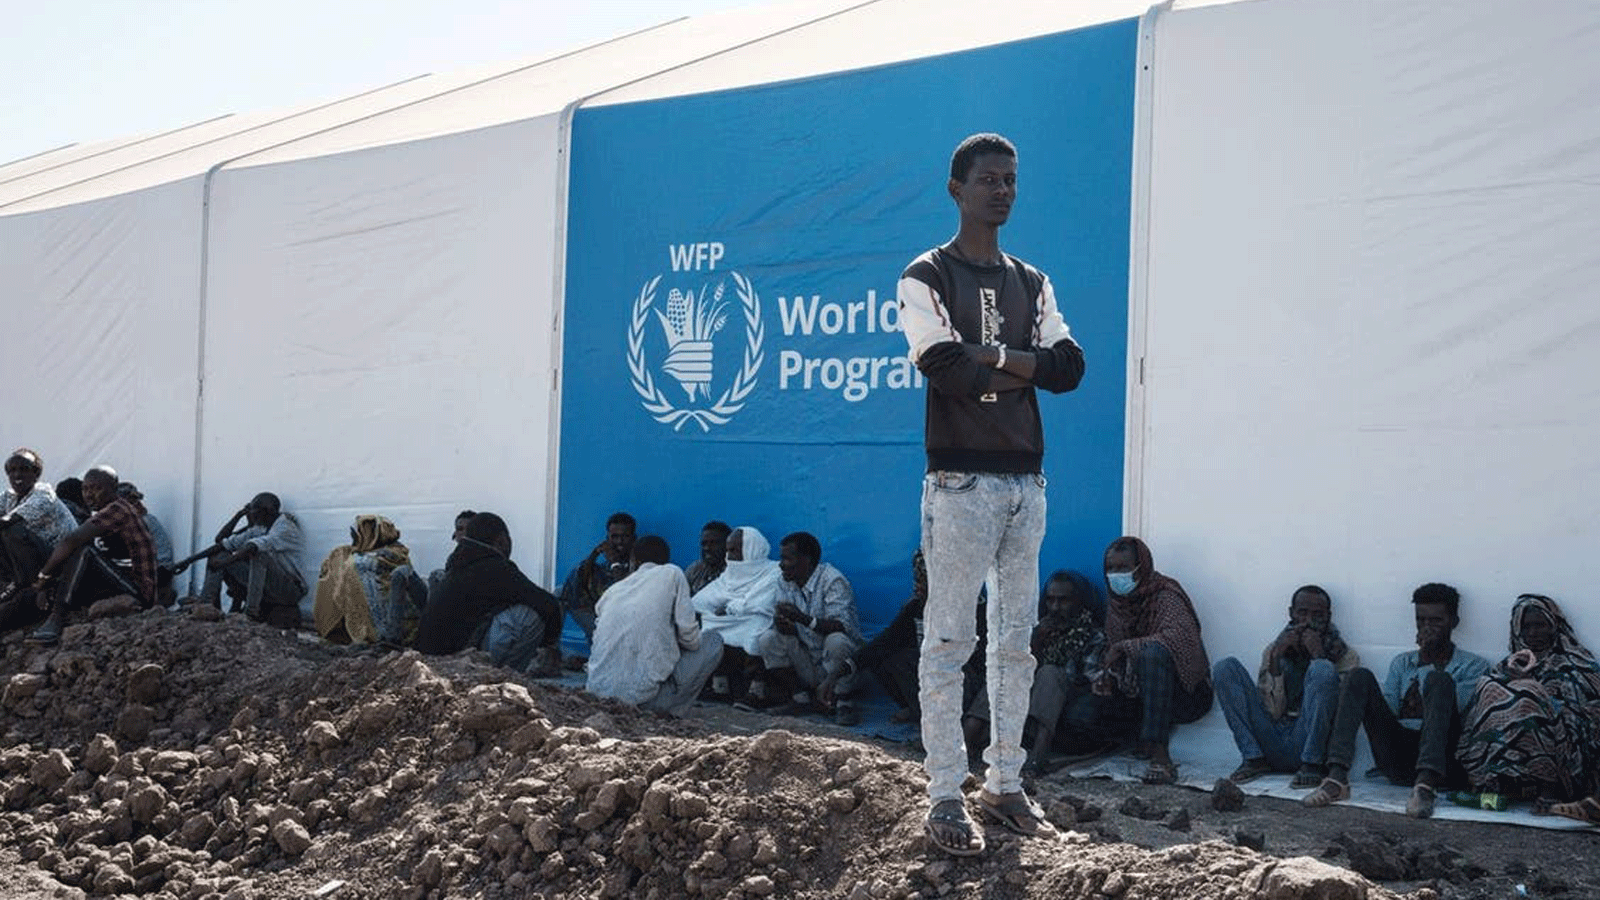 اللاجئون الإثيوبيون الذين فروا من صراع تيغراي الإثيوبي ينتظرون توزيع المساعدات بجوار مستودع أقامه برنامج الأغذية العالمي في مخيم أم ركوبة للاجئين في القضارف، شرق السودان. 6 ديسمبر / كانون الأول 2020.